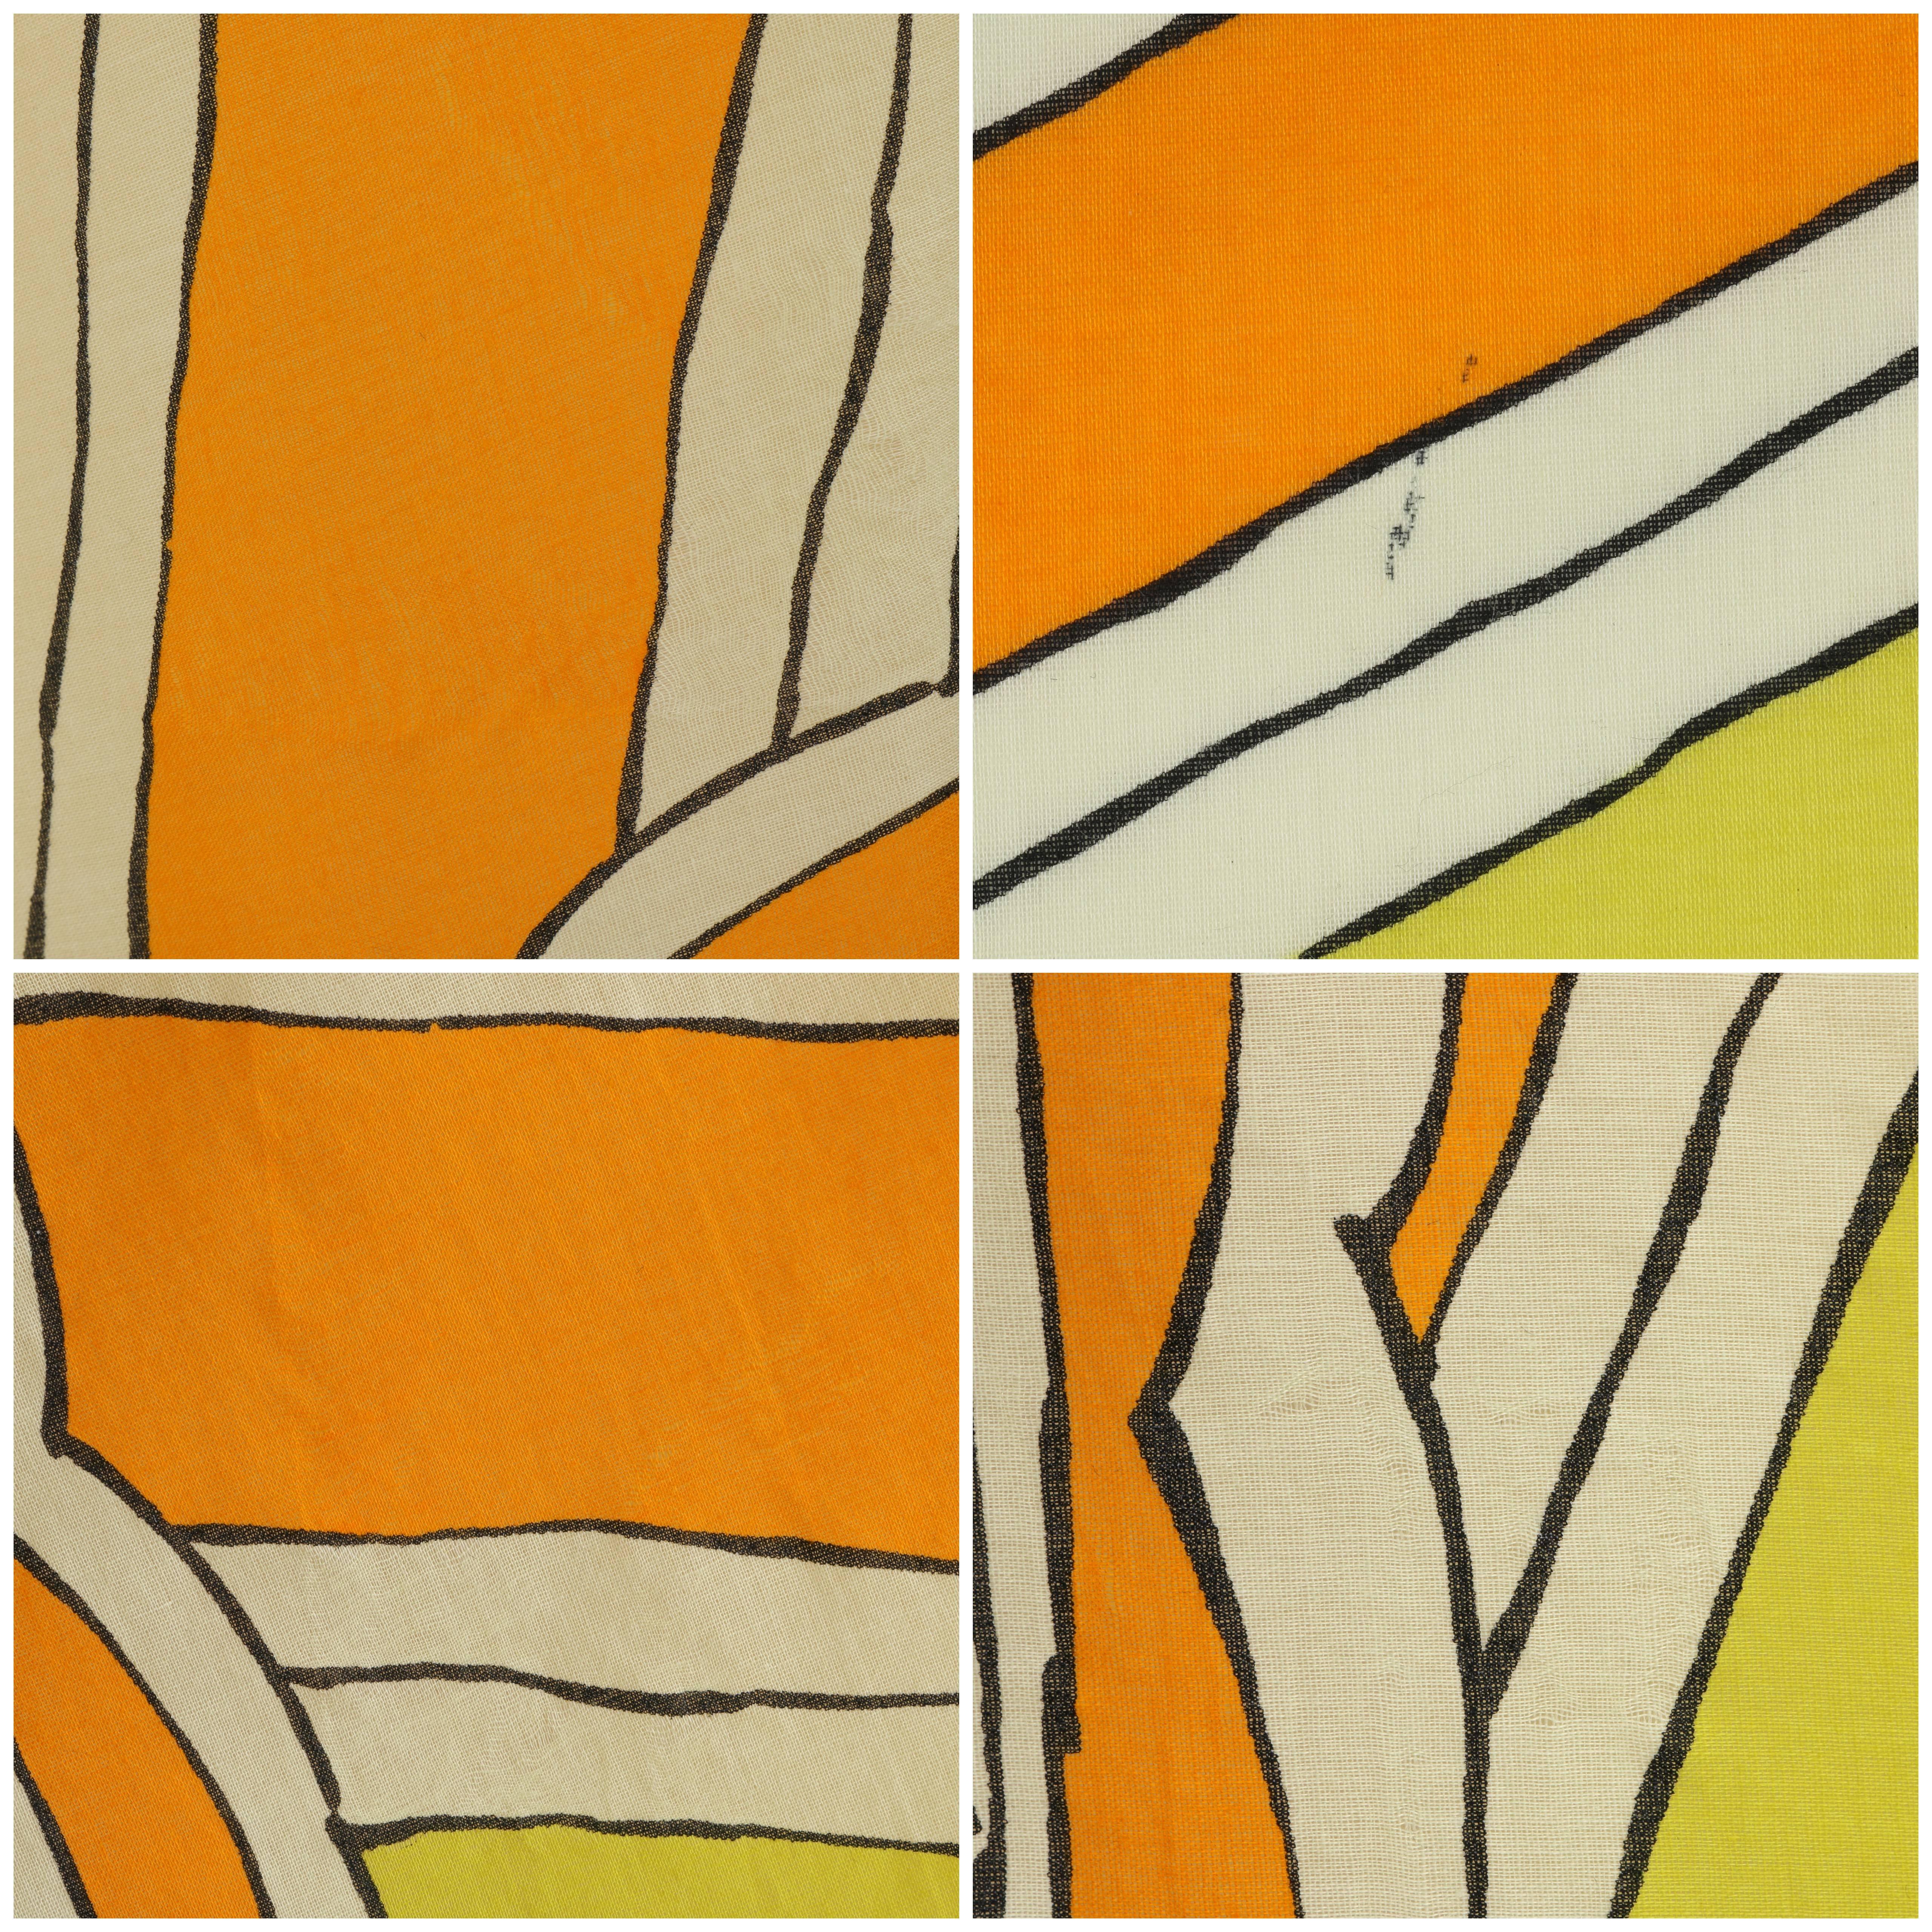 HERMES Giant Orange & Yellow Diagonal Striped Cotton Sarong Scarf Wrap Throw 3